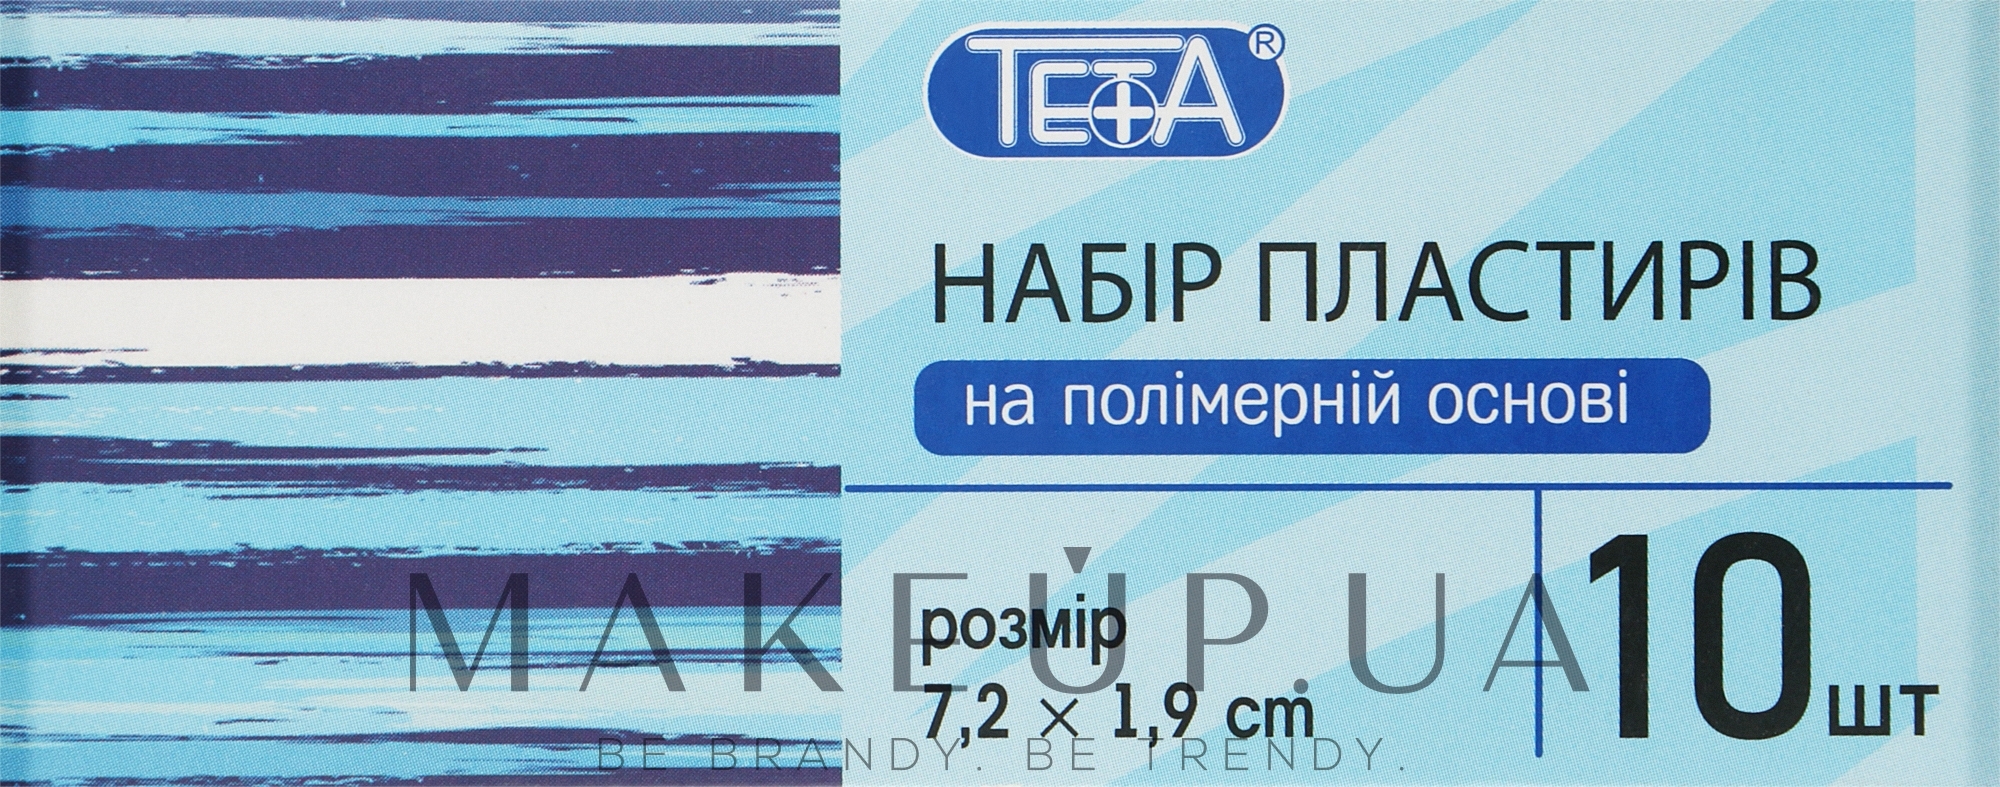 Набор пластырей первой медицинской помощи на полимерной основе 7,2х1,9 см - Teta — фото 10шт